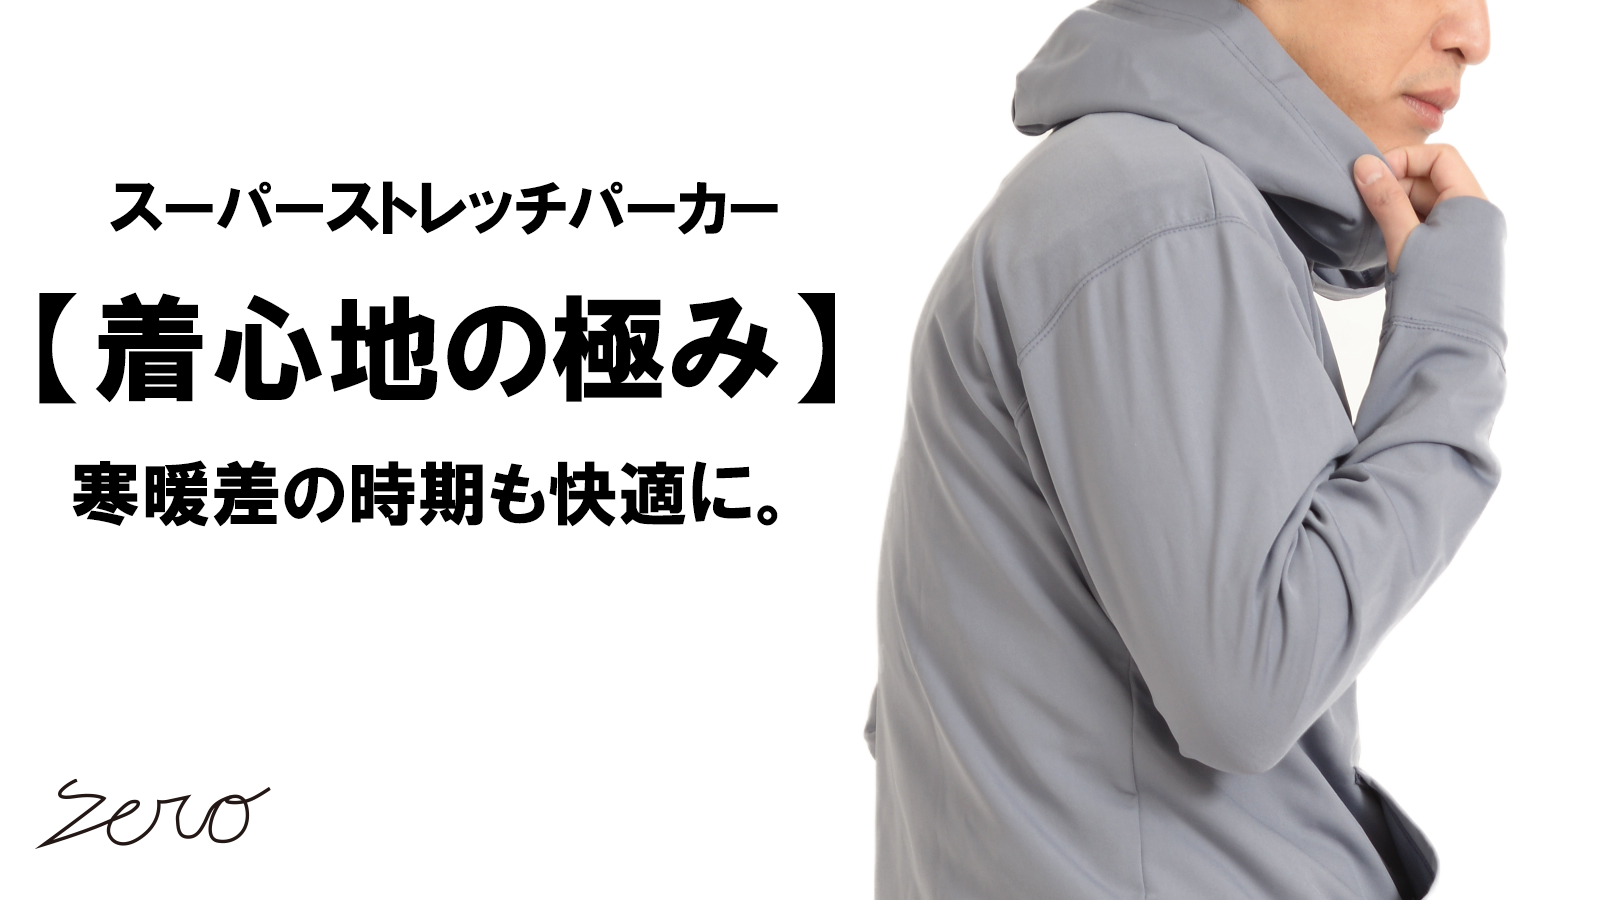 New Makuake Project【温度調節素材で、衣服内の温度を快適に保つ。スーパーストレッチプルオーバーパーカー】